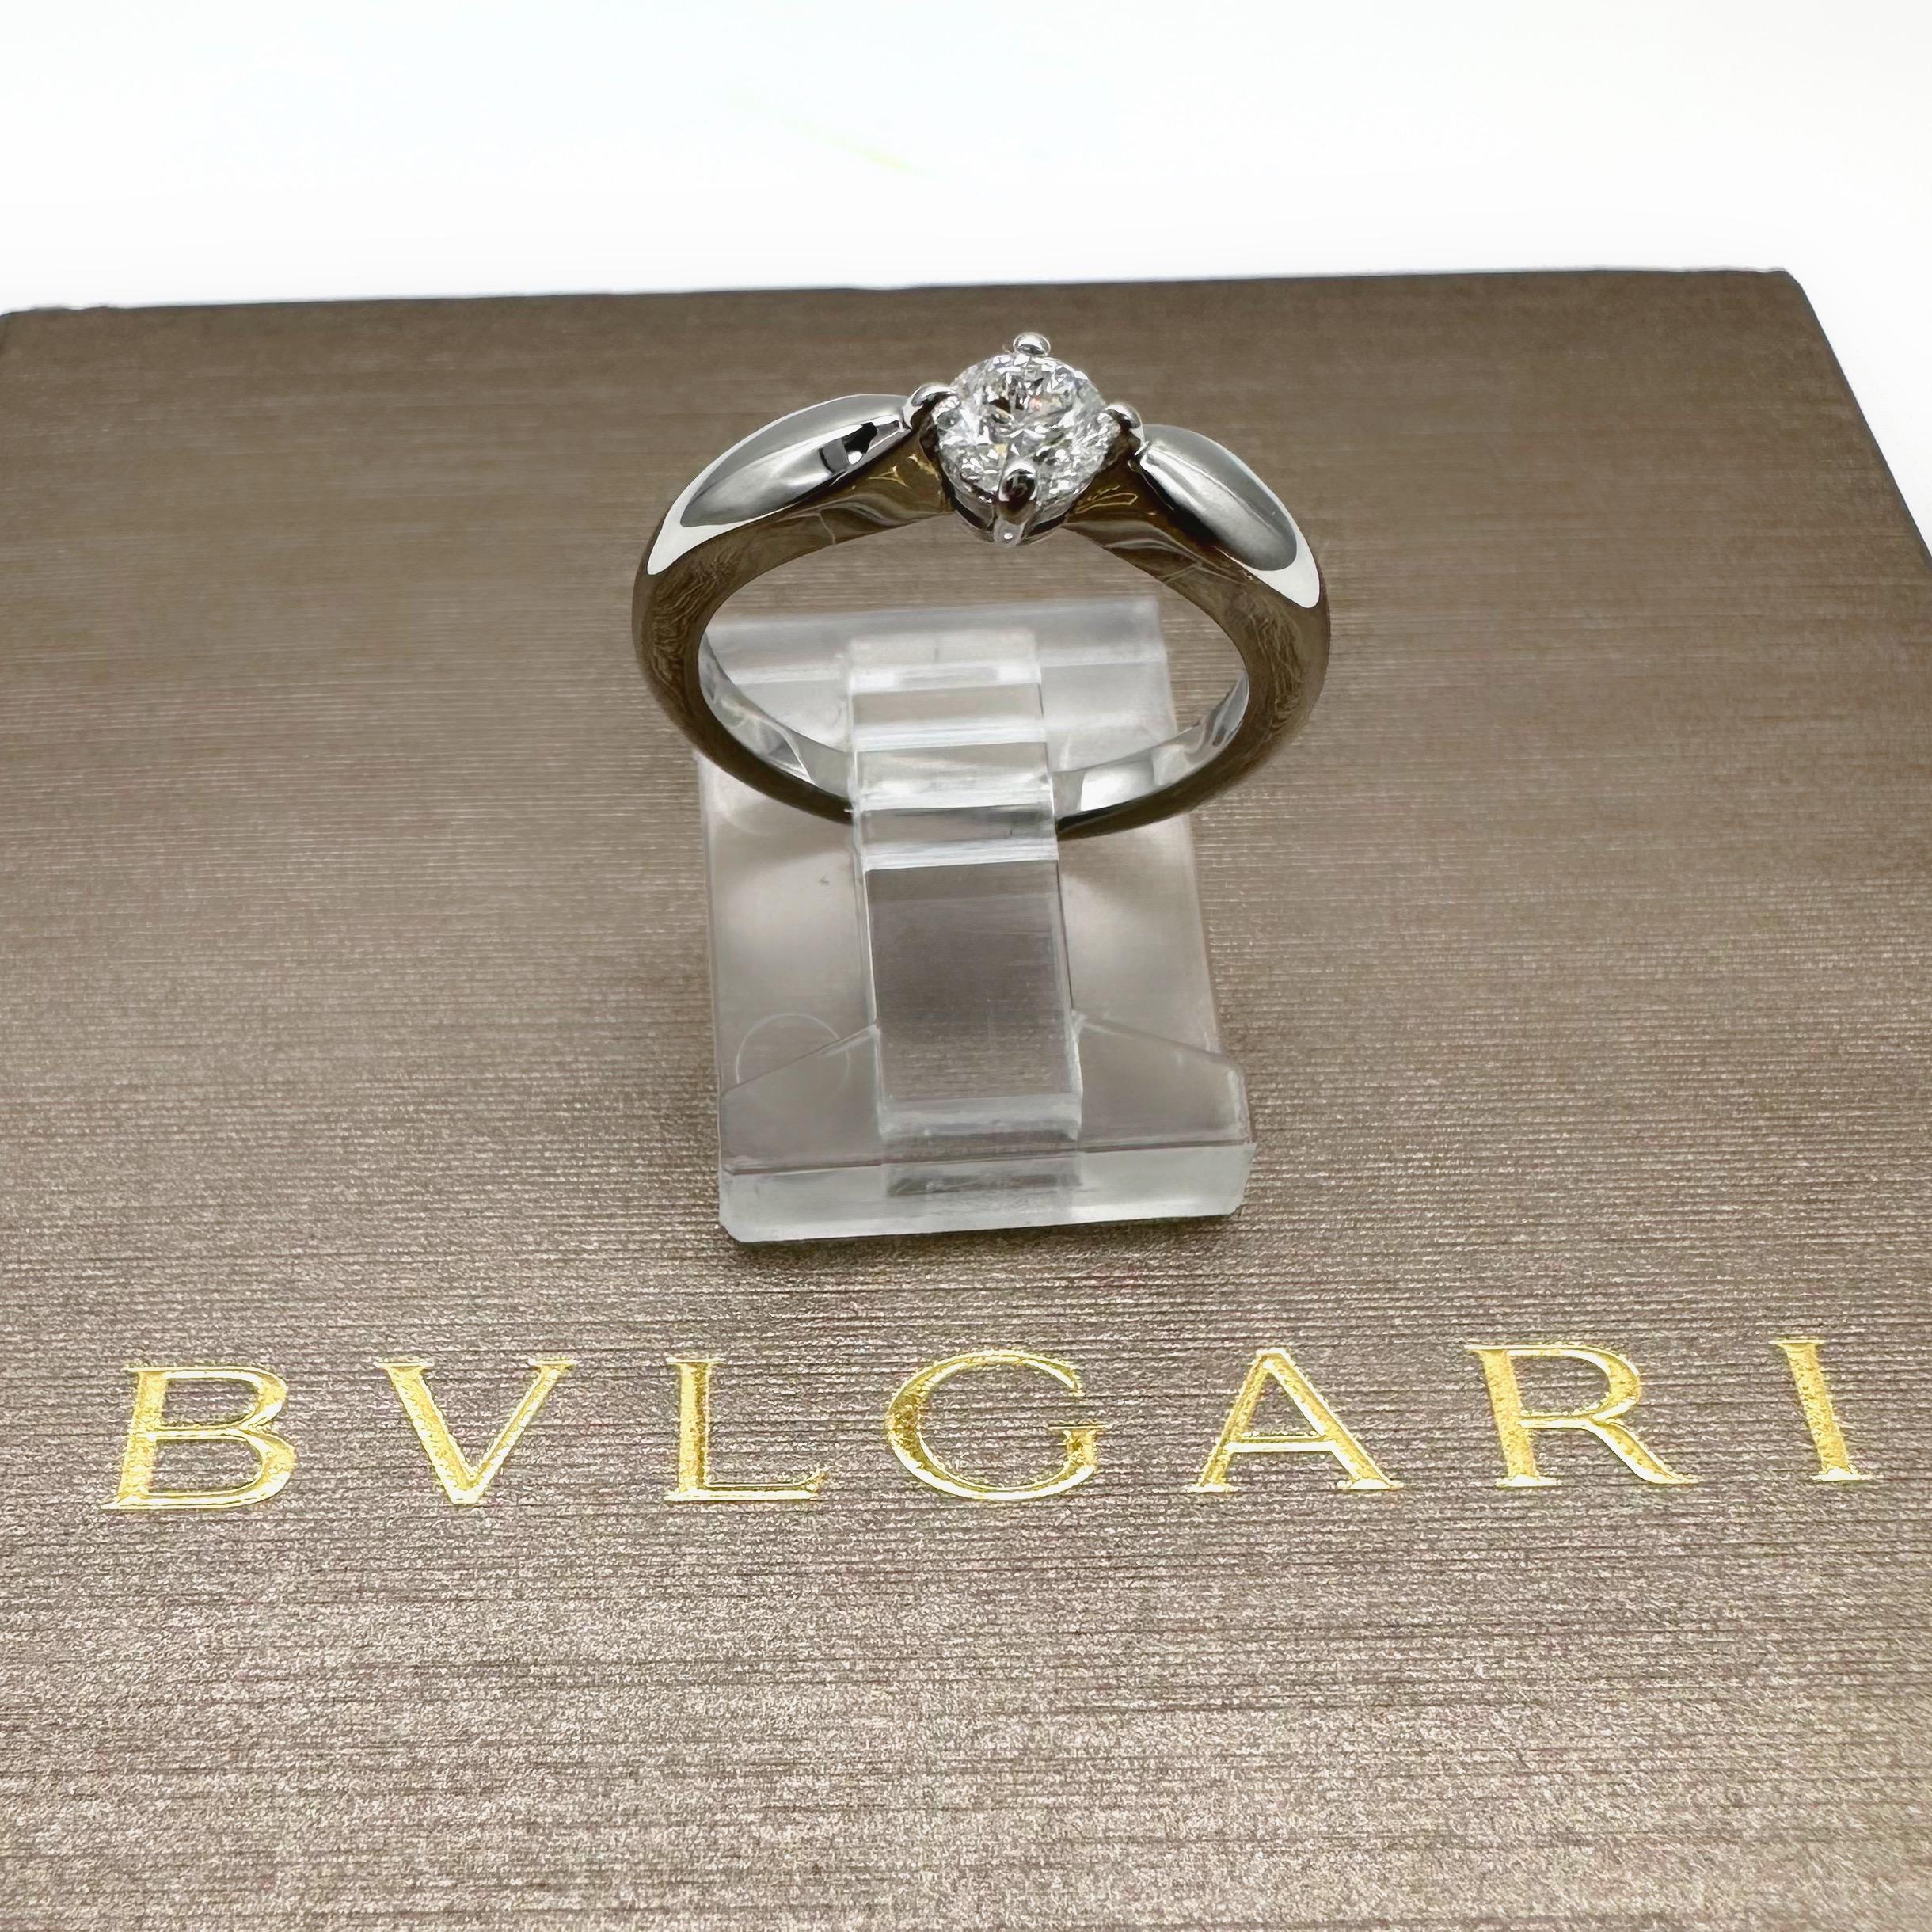 Bvlgari Dedicata a Venezia Torcello Round Diamond 0.30 Tcw Engagement Ring For Sale 3